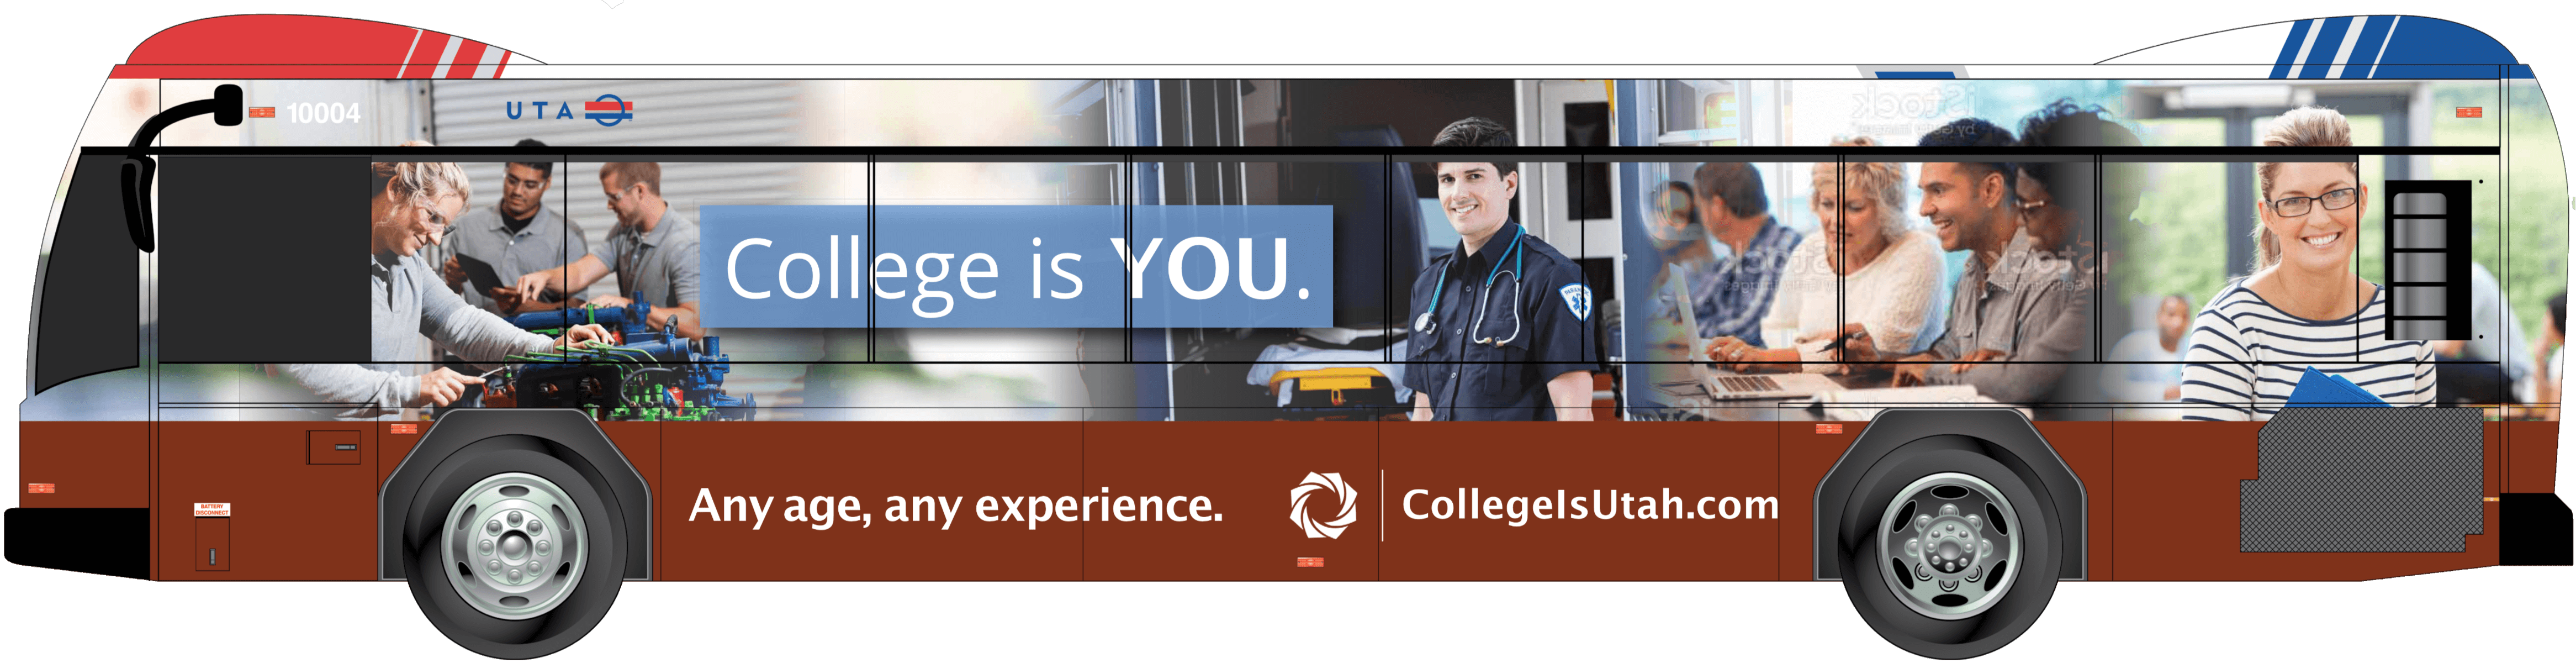 Bus advertisement of College Is Utah mock up on a UTA Bus